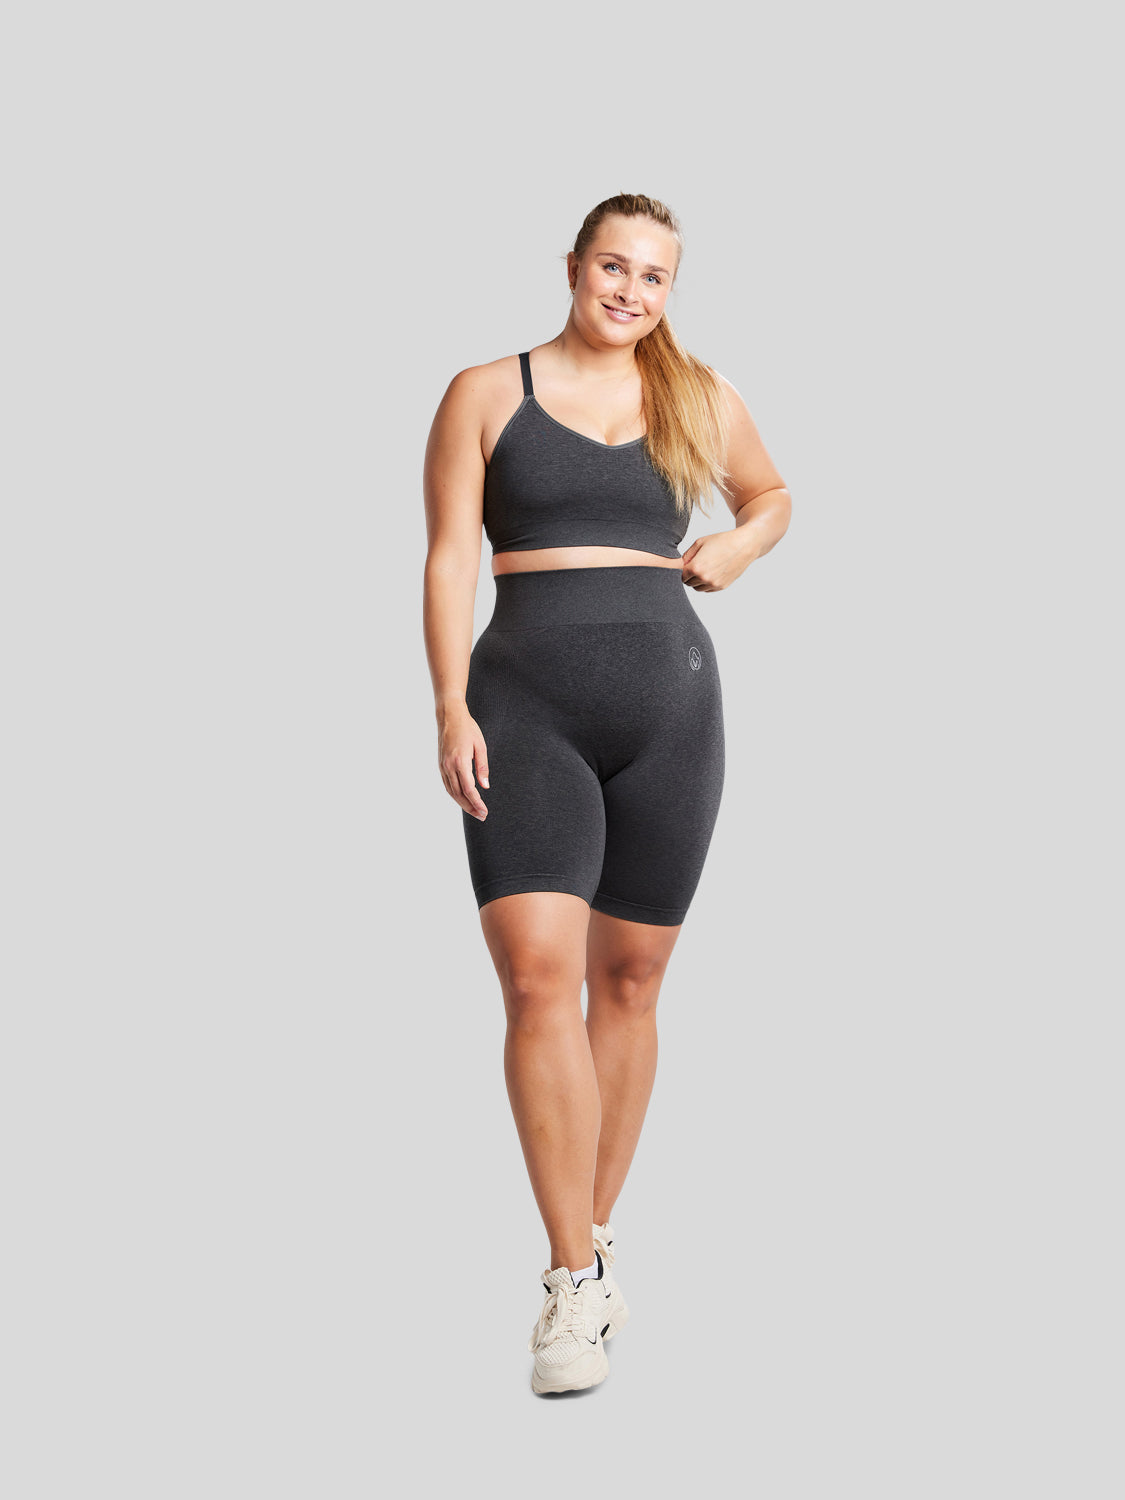 kvinde forfra i fuld figur med seamless shorts og sports bh i farven black melange